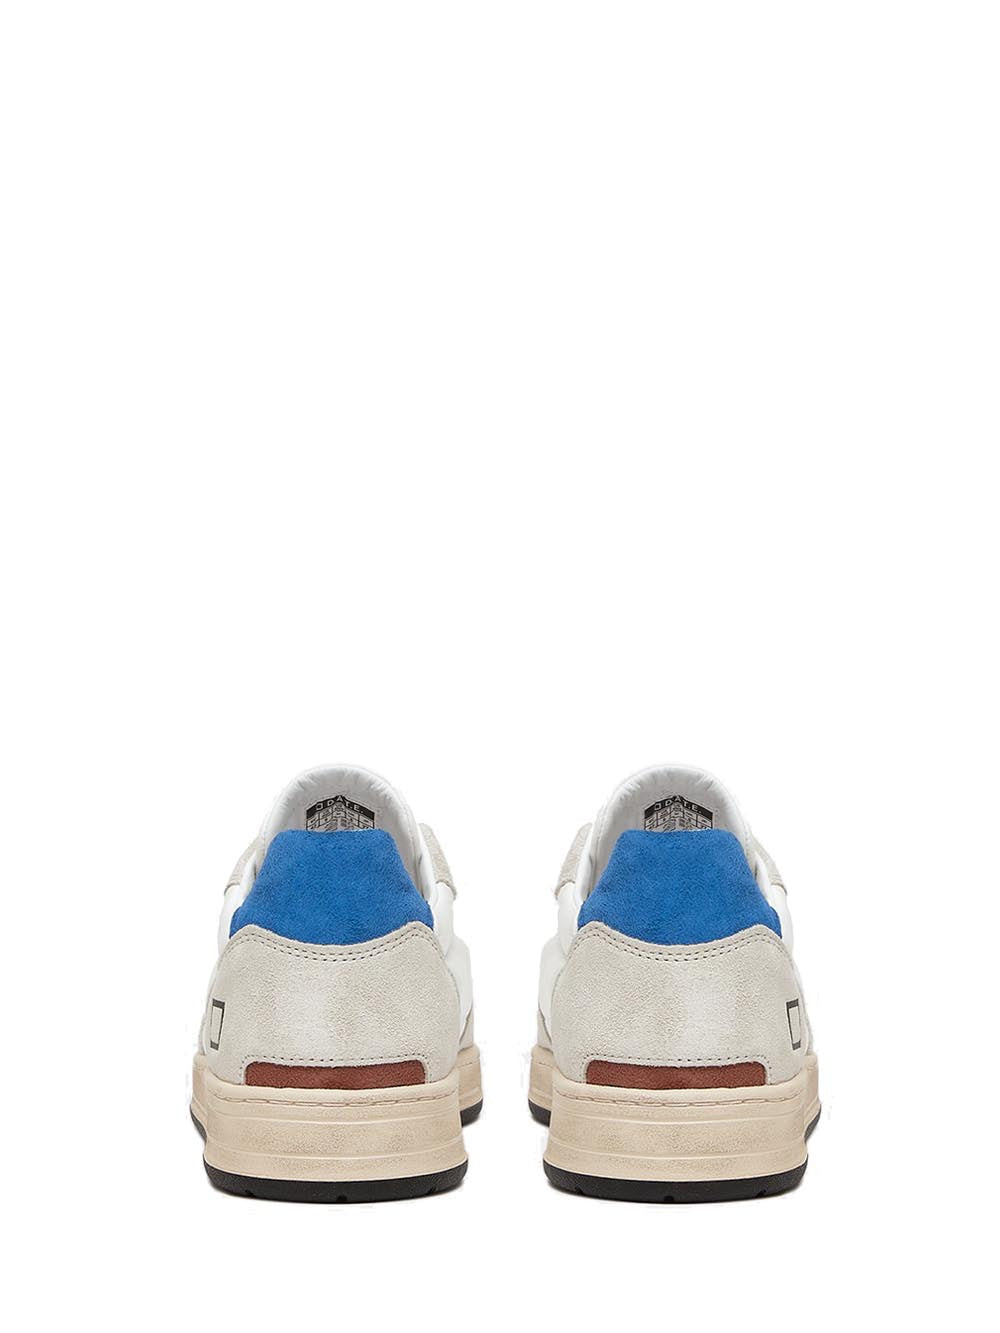 D.A.T.E. Sneakers Uomo Bianco bluette